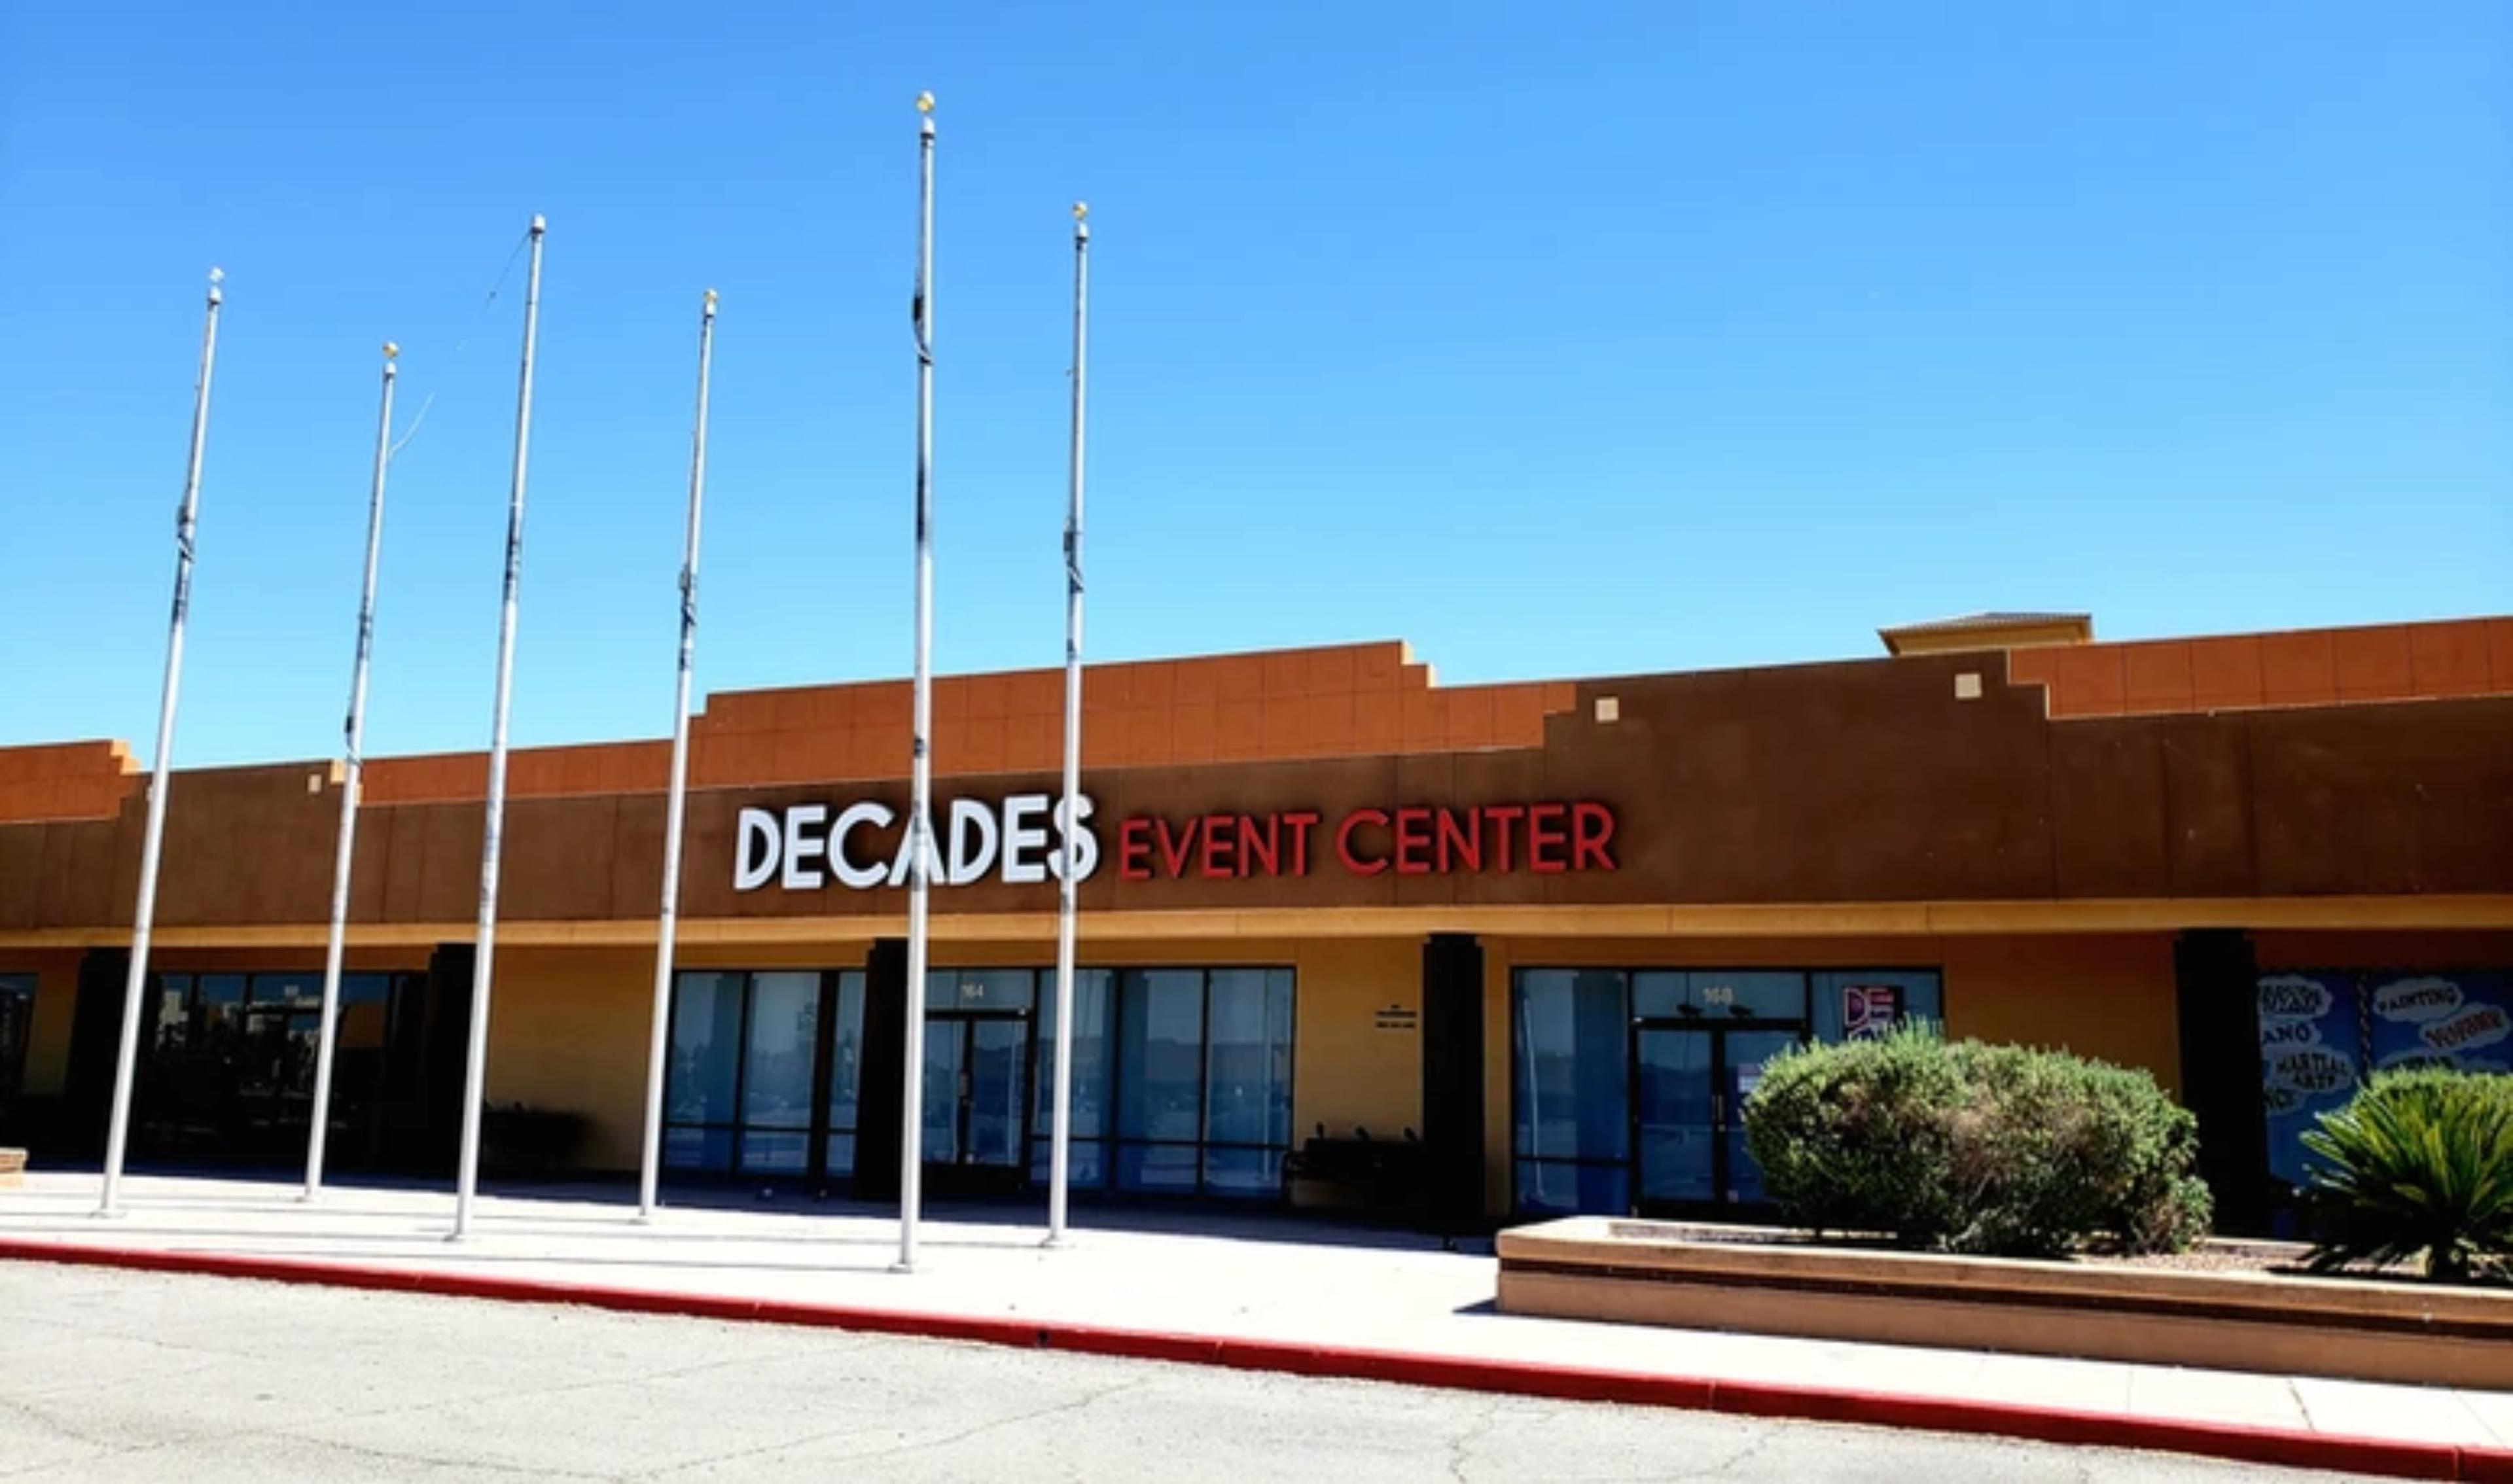 Decades Event Center